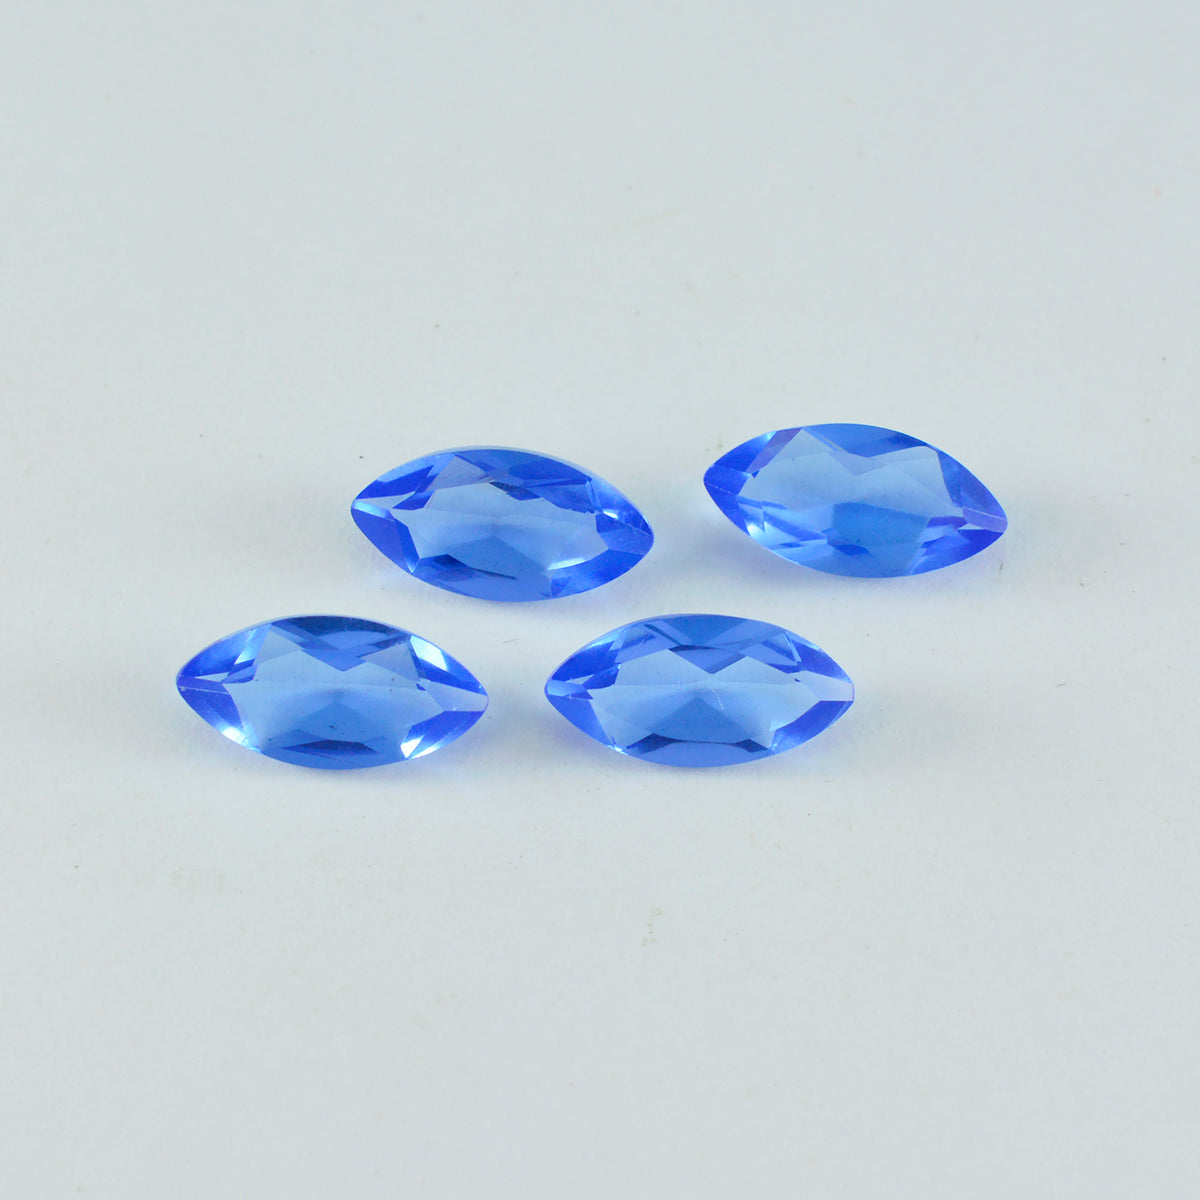 Riyogems 1PC Blauwe Saffier CZ Facet 8x16 mm Marquise Vorm verbazingwekkende Kwaliteit Steen